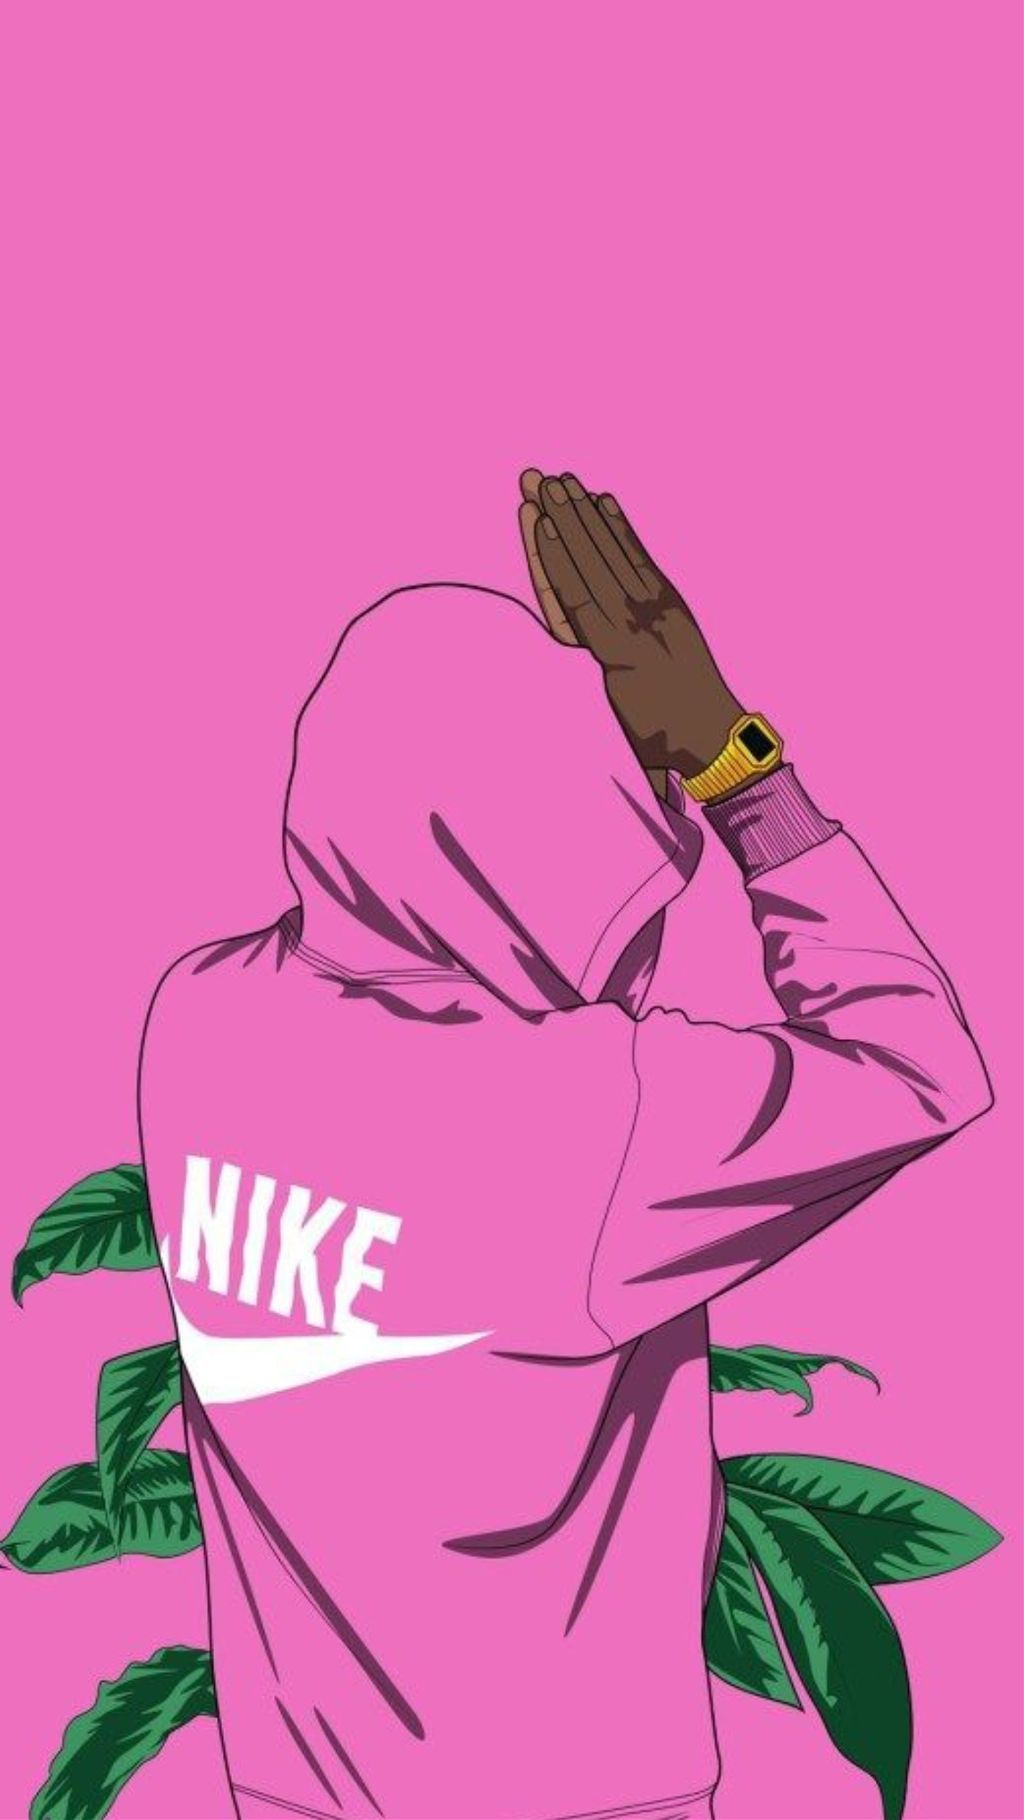 Pink Nike: Màu hồng luôn khiến chúng ta cảm thấy nhẹ nhàng và nữ tính. Với những mẫu giày, quần áo và phụ kiện Nike màu hồng, bạn sẽ tỏa sáng và toả sáng như một ngôi sao thực sự. Hãy xem hình ảnh liên quan để đắm mình trong màu hồng tuyệt đẹp của Nike.